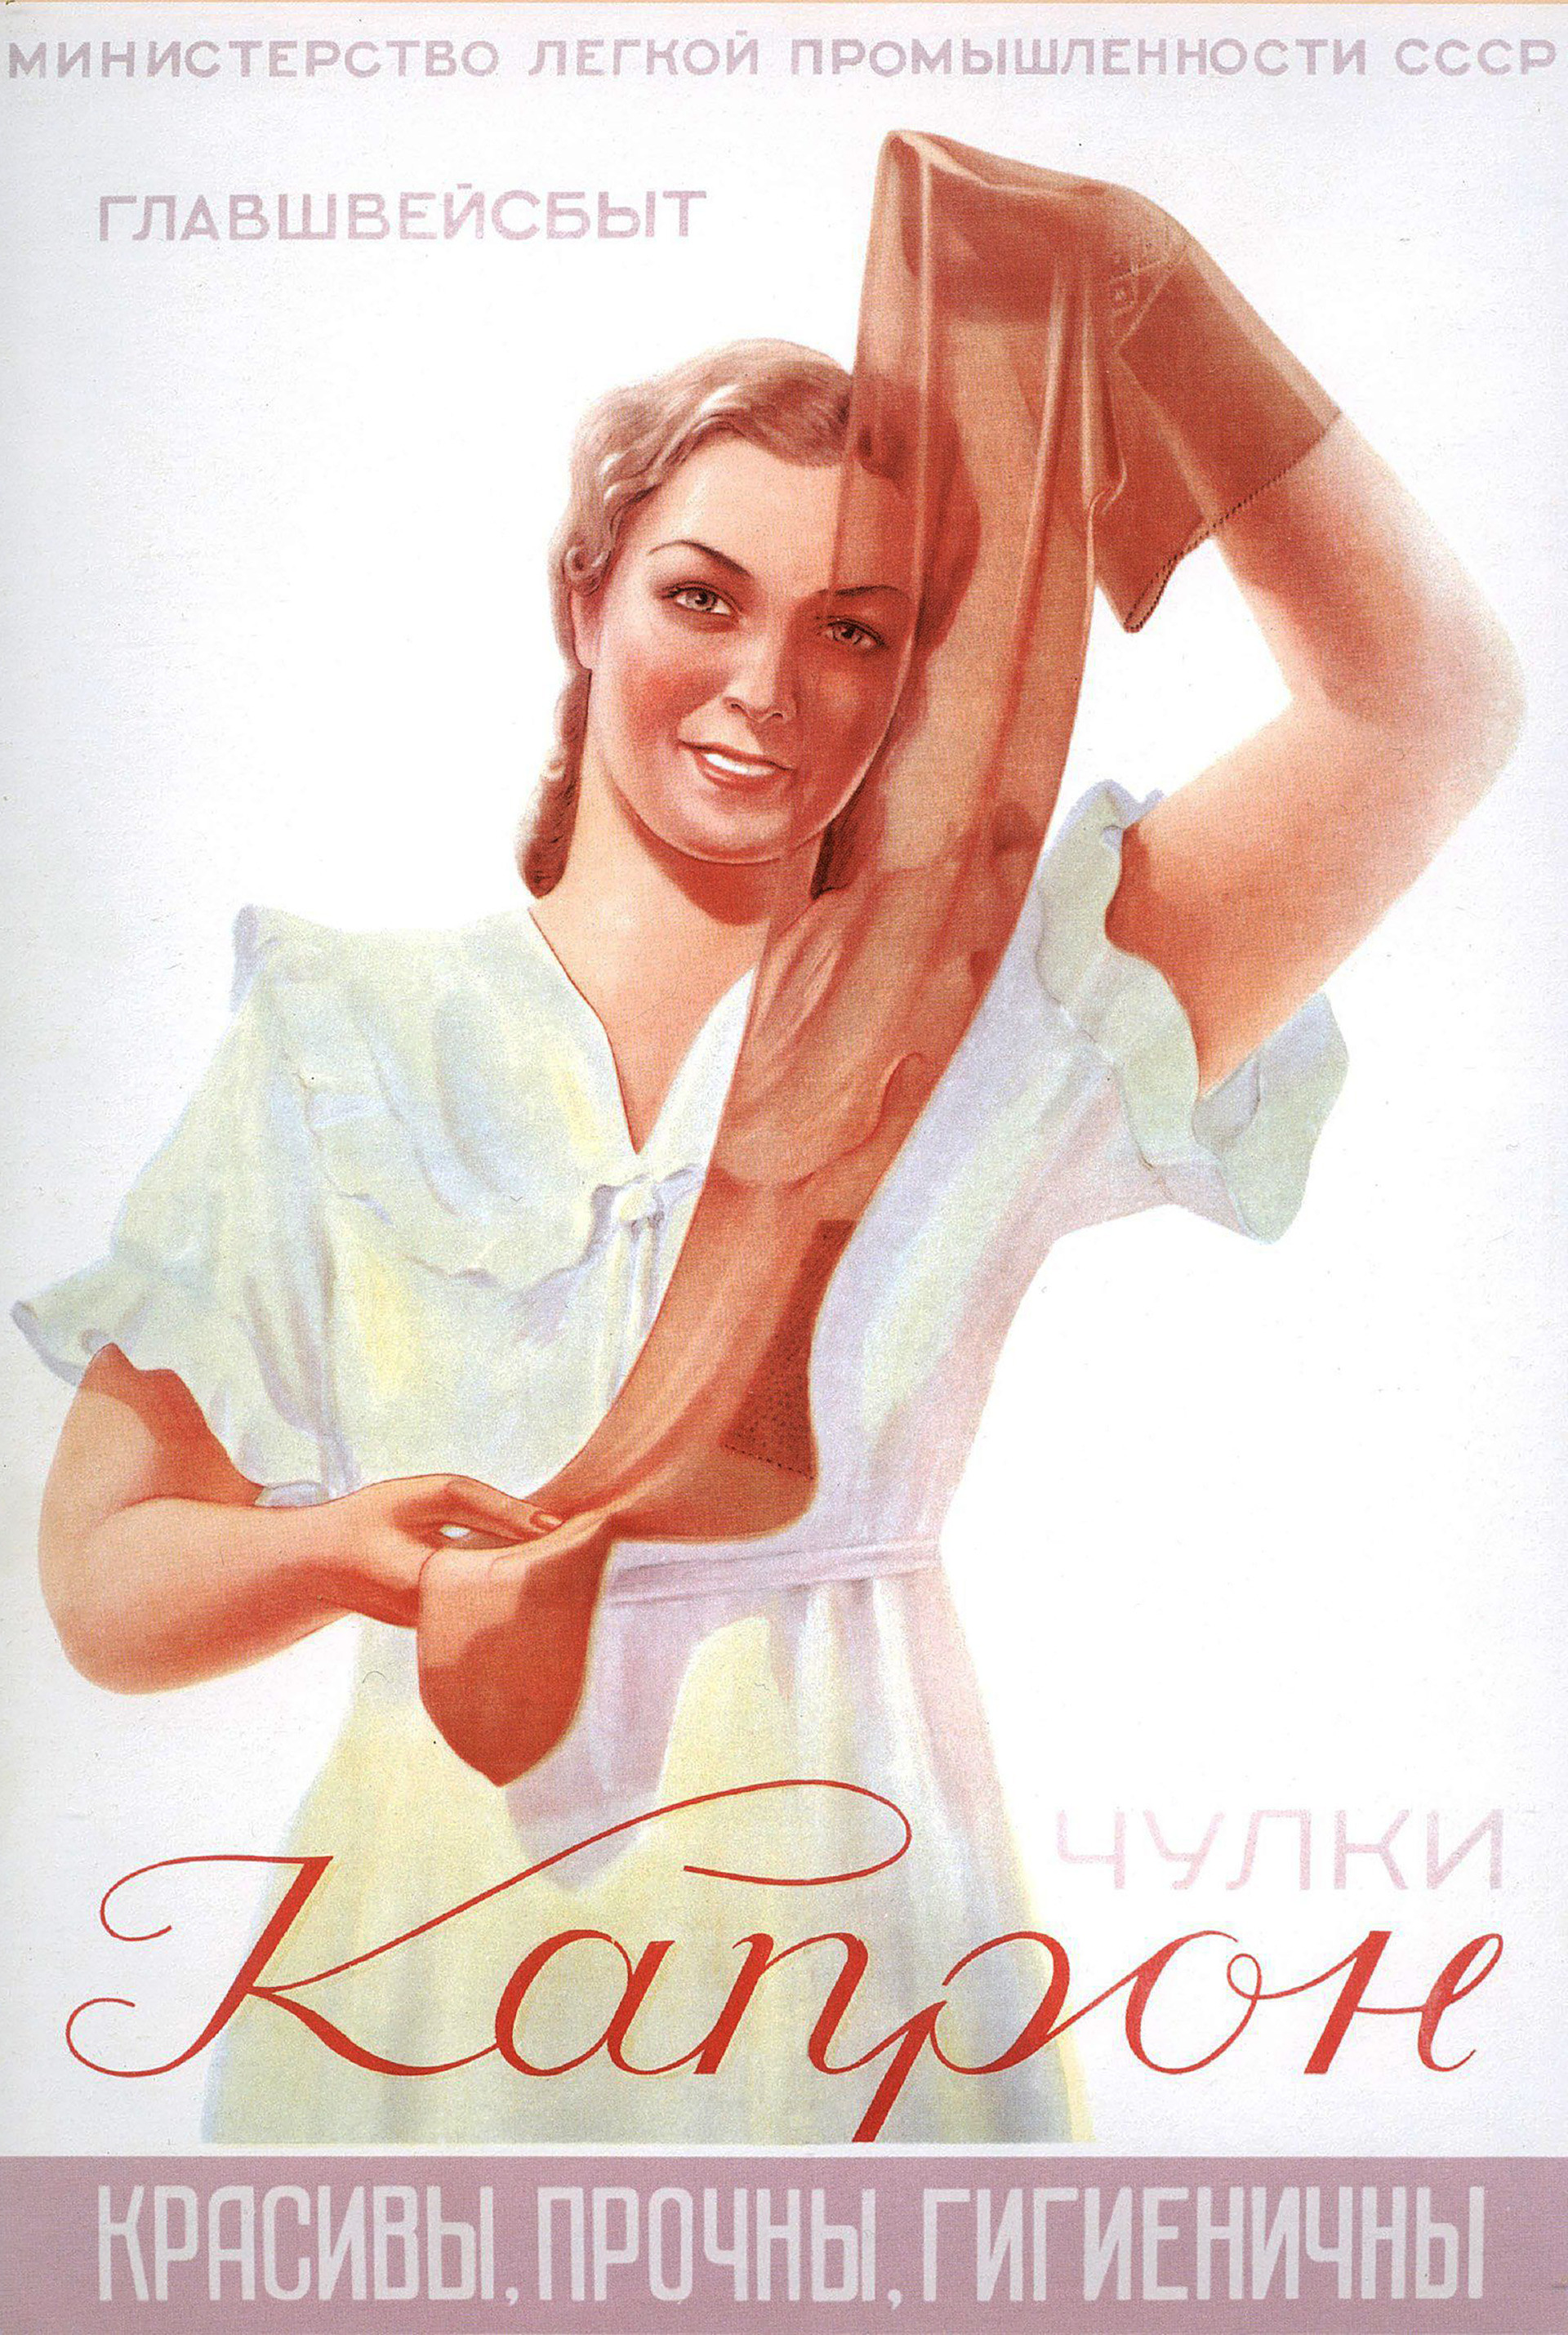 Dieci poster sovietici che vi faranno ridere e piangere allo-1.jpg